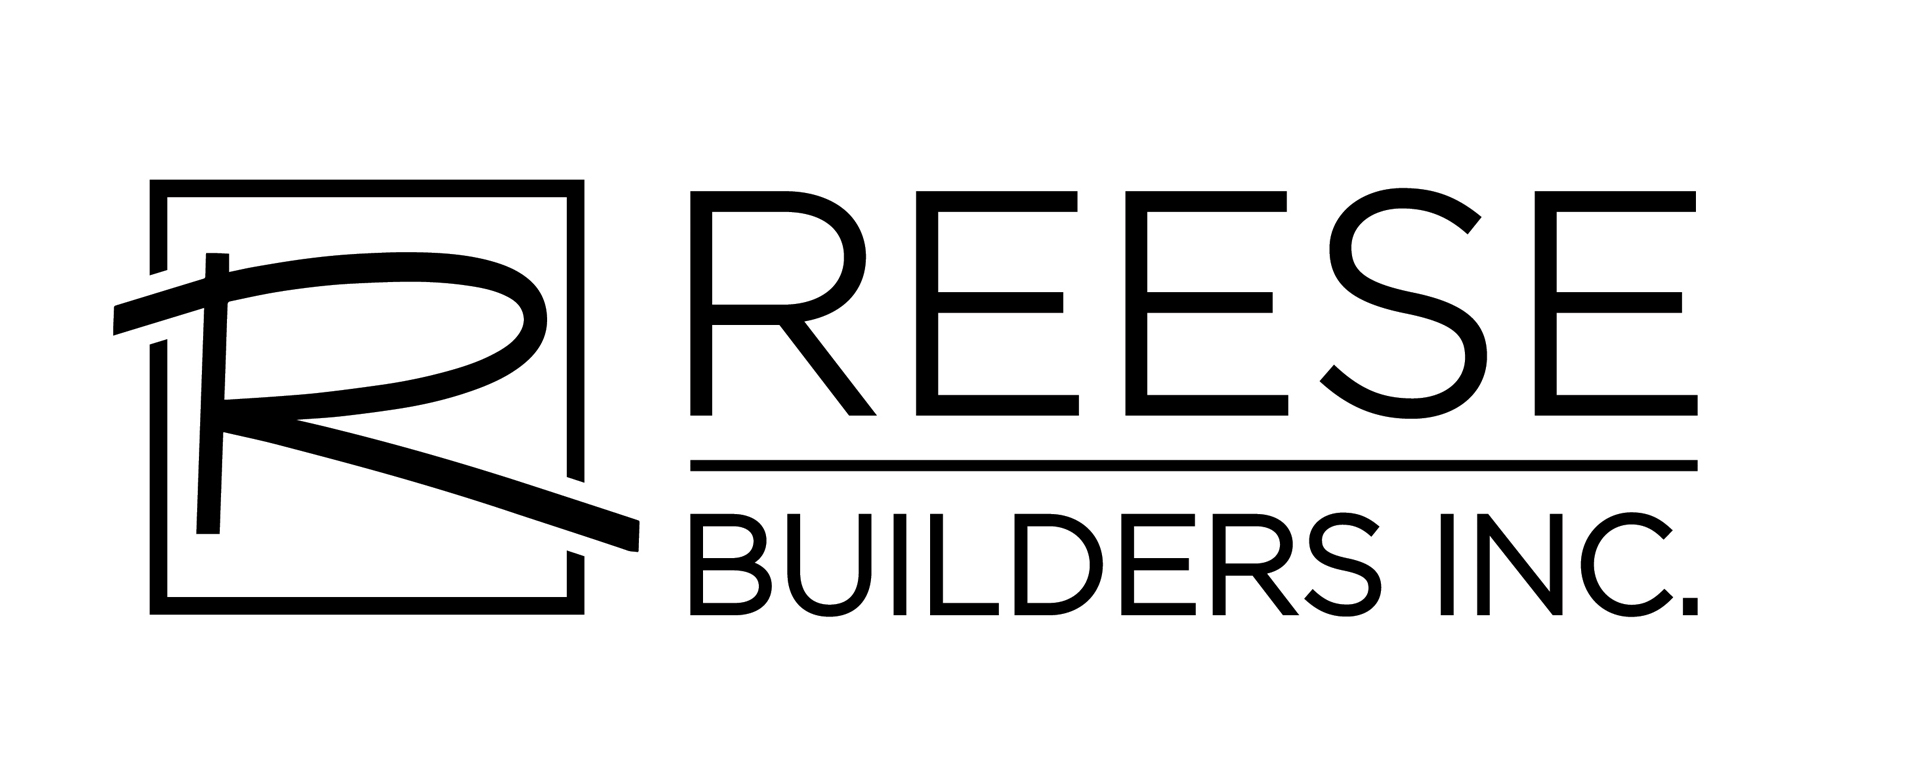 Reese Builders